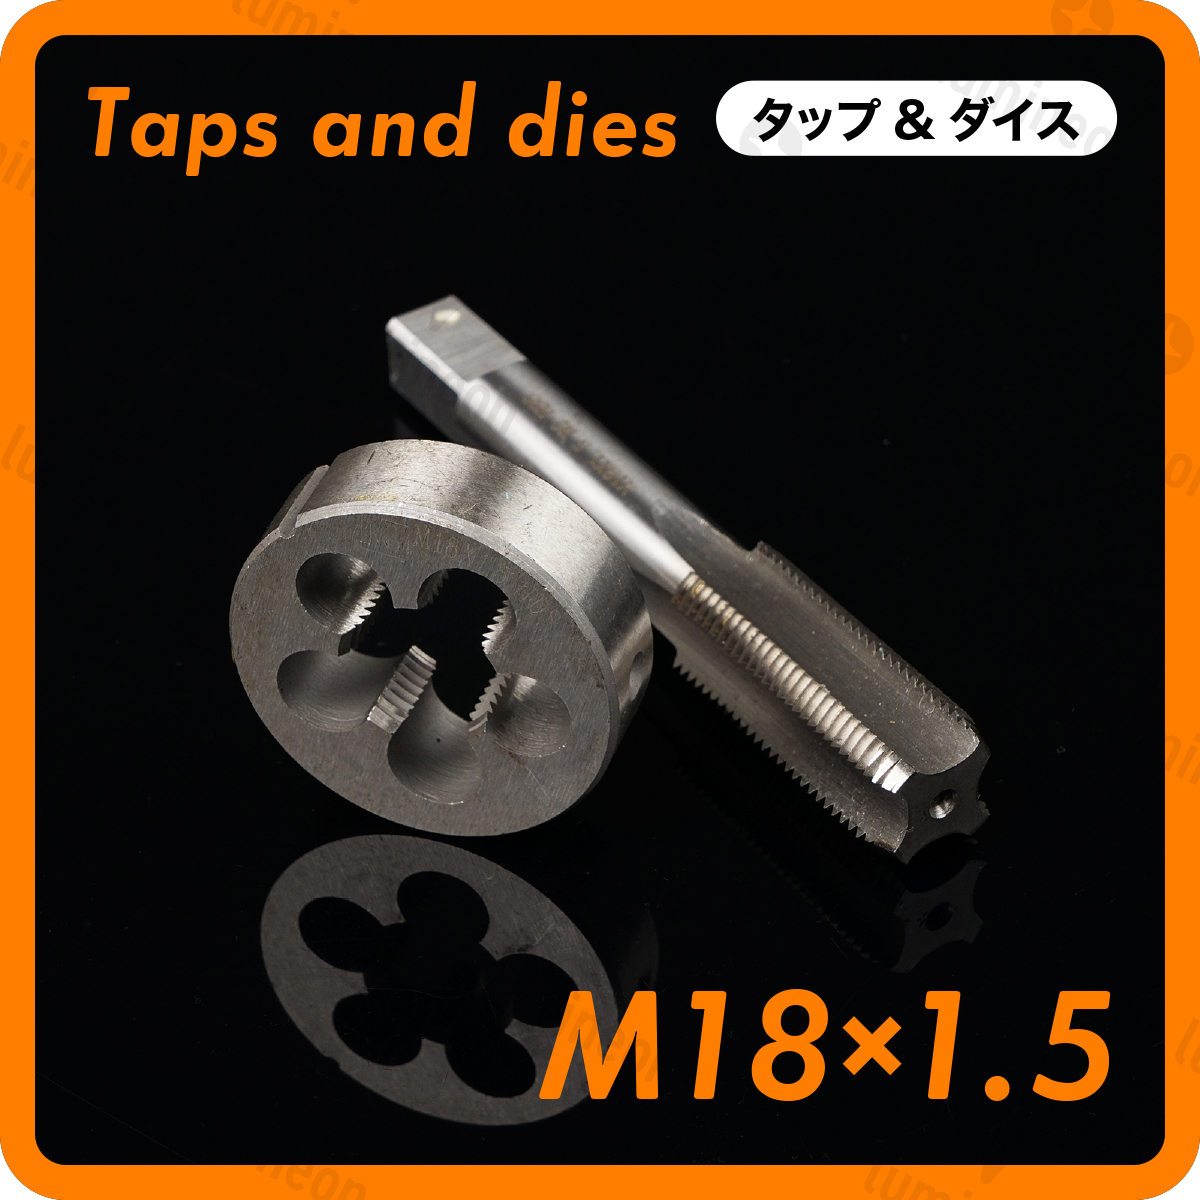 タップ 丸 ダイス M18×1.5 セット ツール 工具 セット ねじ 切り 機 ハンドル タップ DIY ネジ 切り 機 ネジ切機 手動 ねじきり g036h1 3_画像1